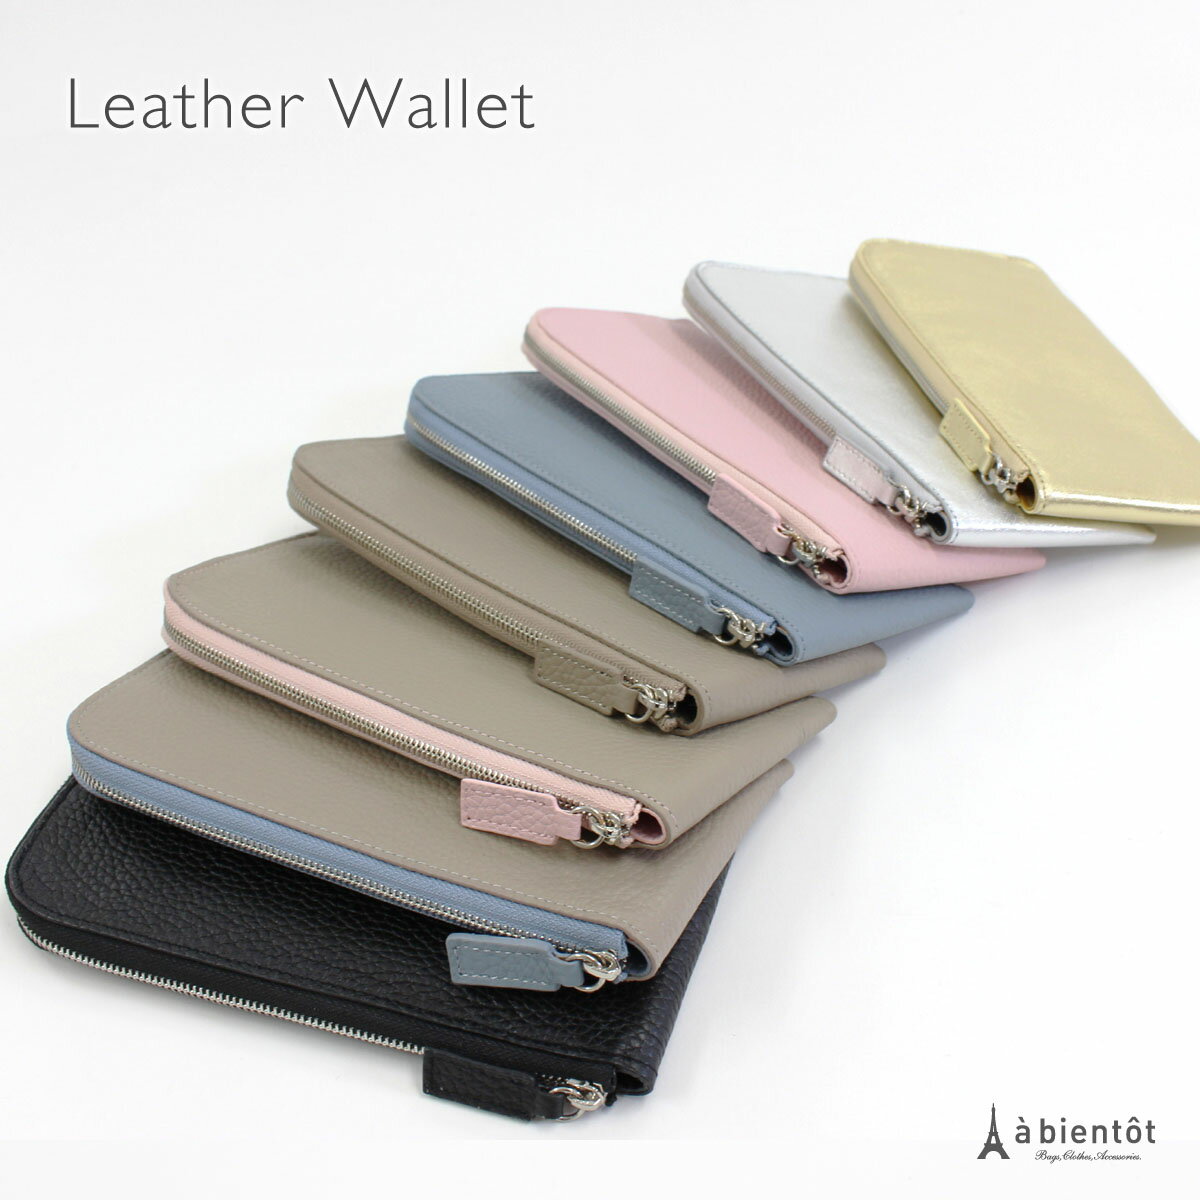 女性に人気の薄いレディース財布おすすめブランド12選 21年最新版 ベストプレゼントガイド